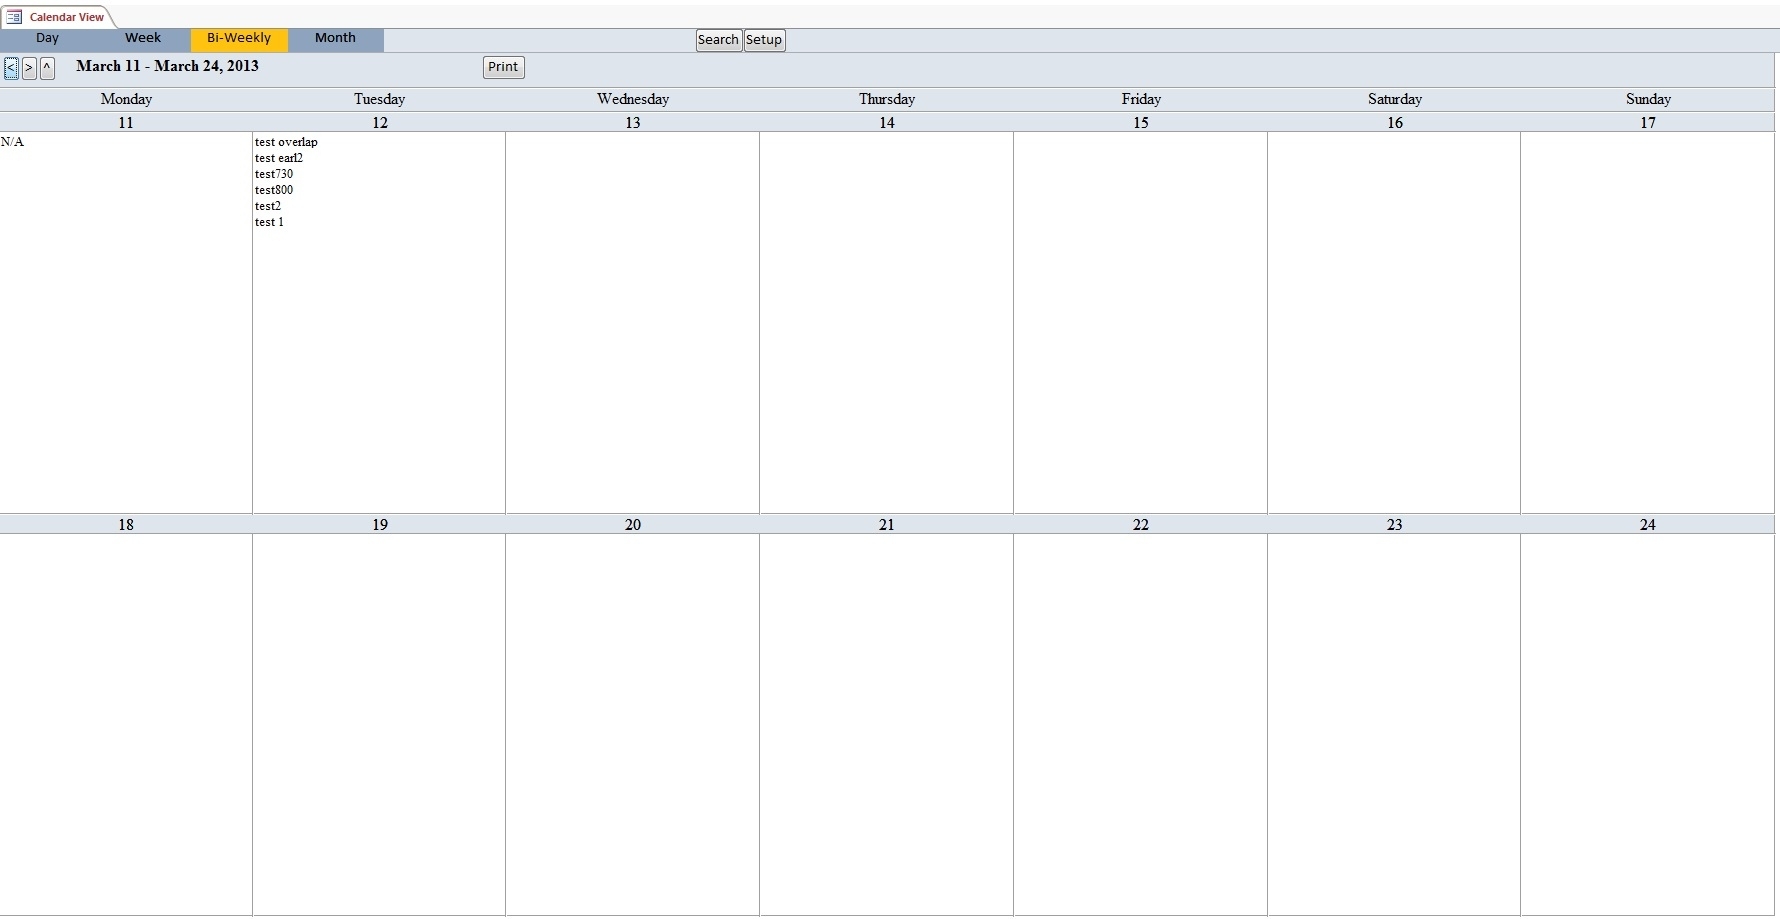 Schedule Template Printable One Week Alendar Blank Weekly With Times Calendar Week To View Template